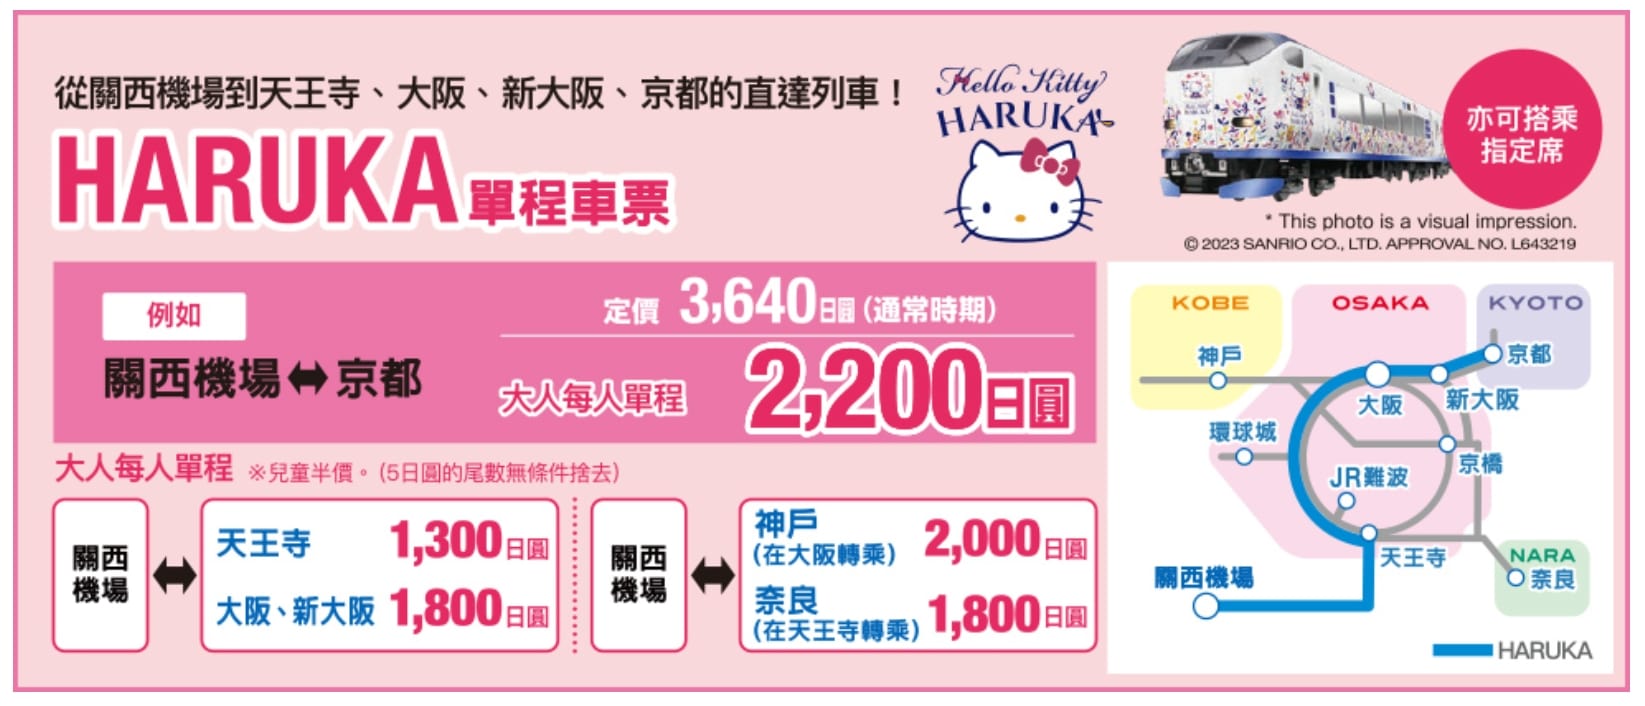 購買關空特急HARUKA單程車票(HARUKA ONE WAY TICKET)搭車劃位方式